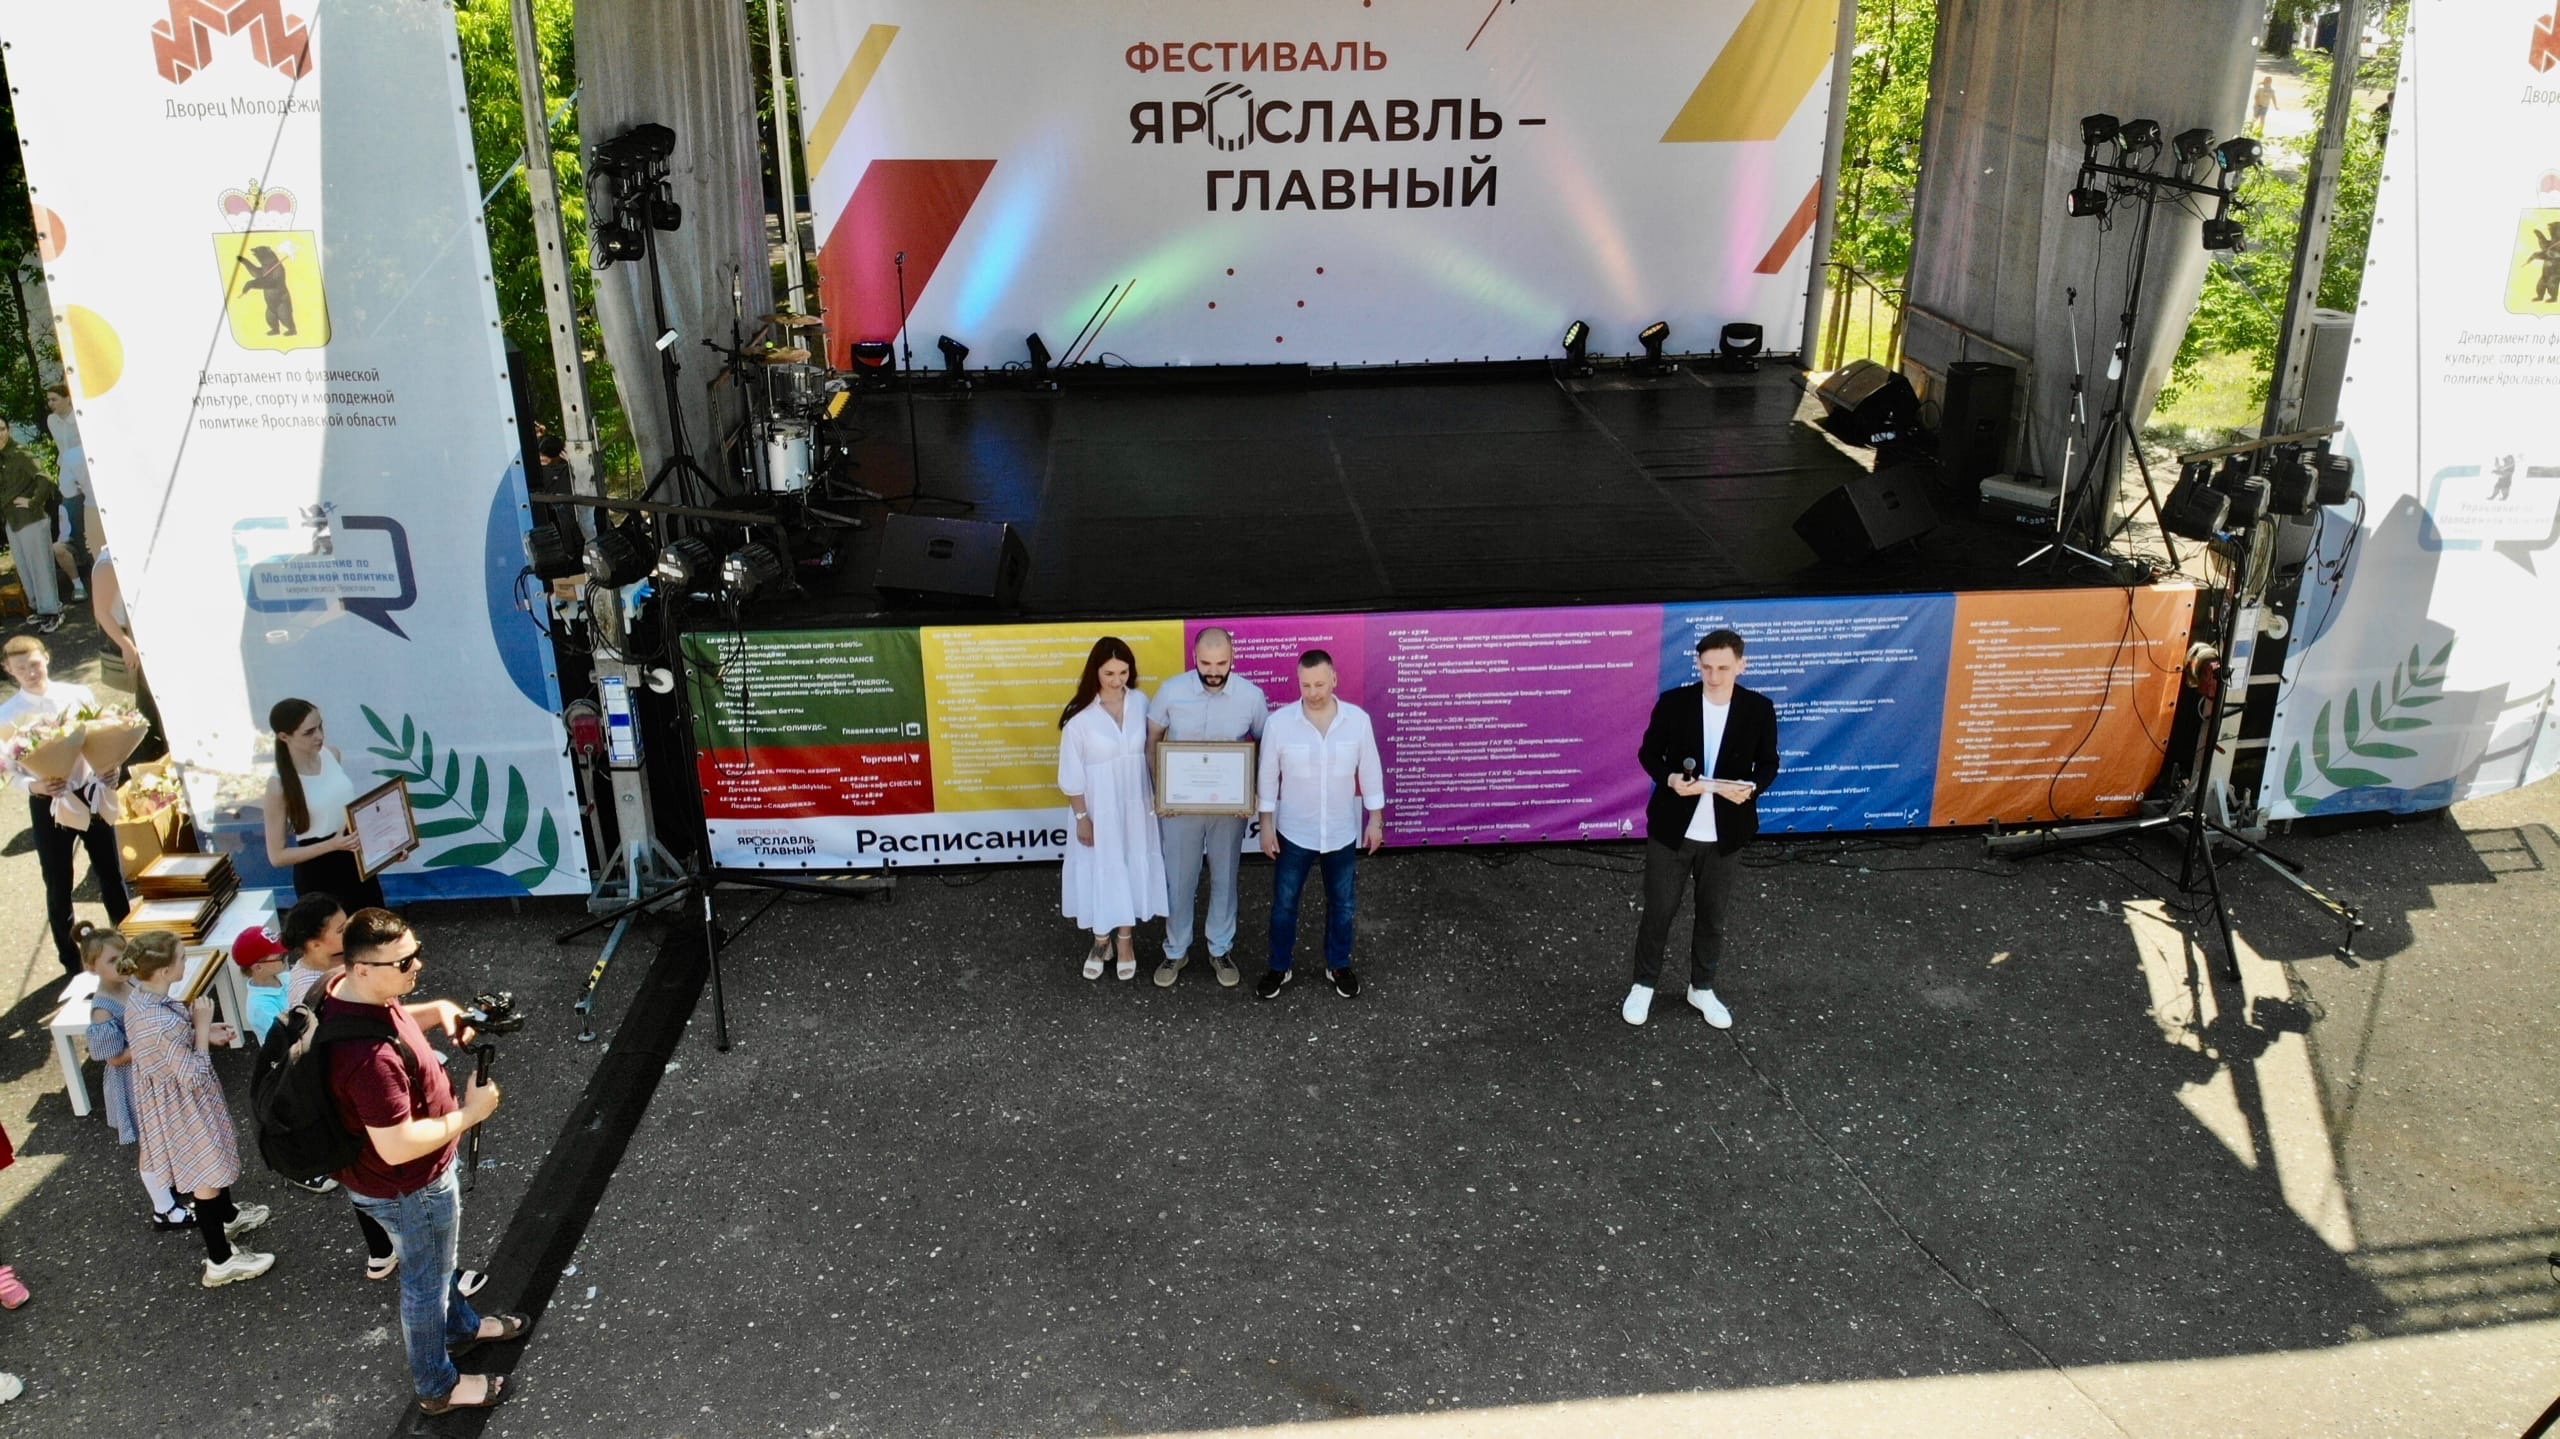 Михаил Евраев принял участие в молодежном фестивале «Ярославль-Главный»